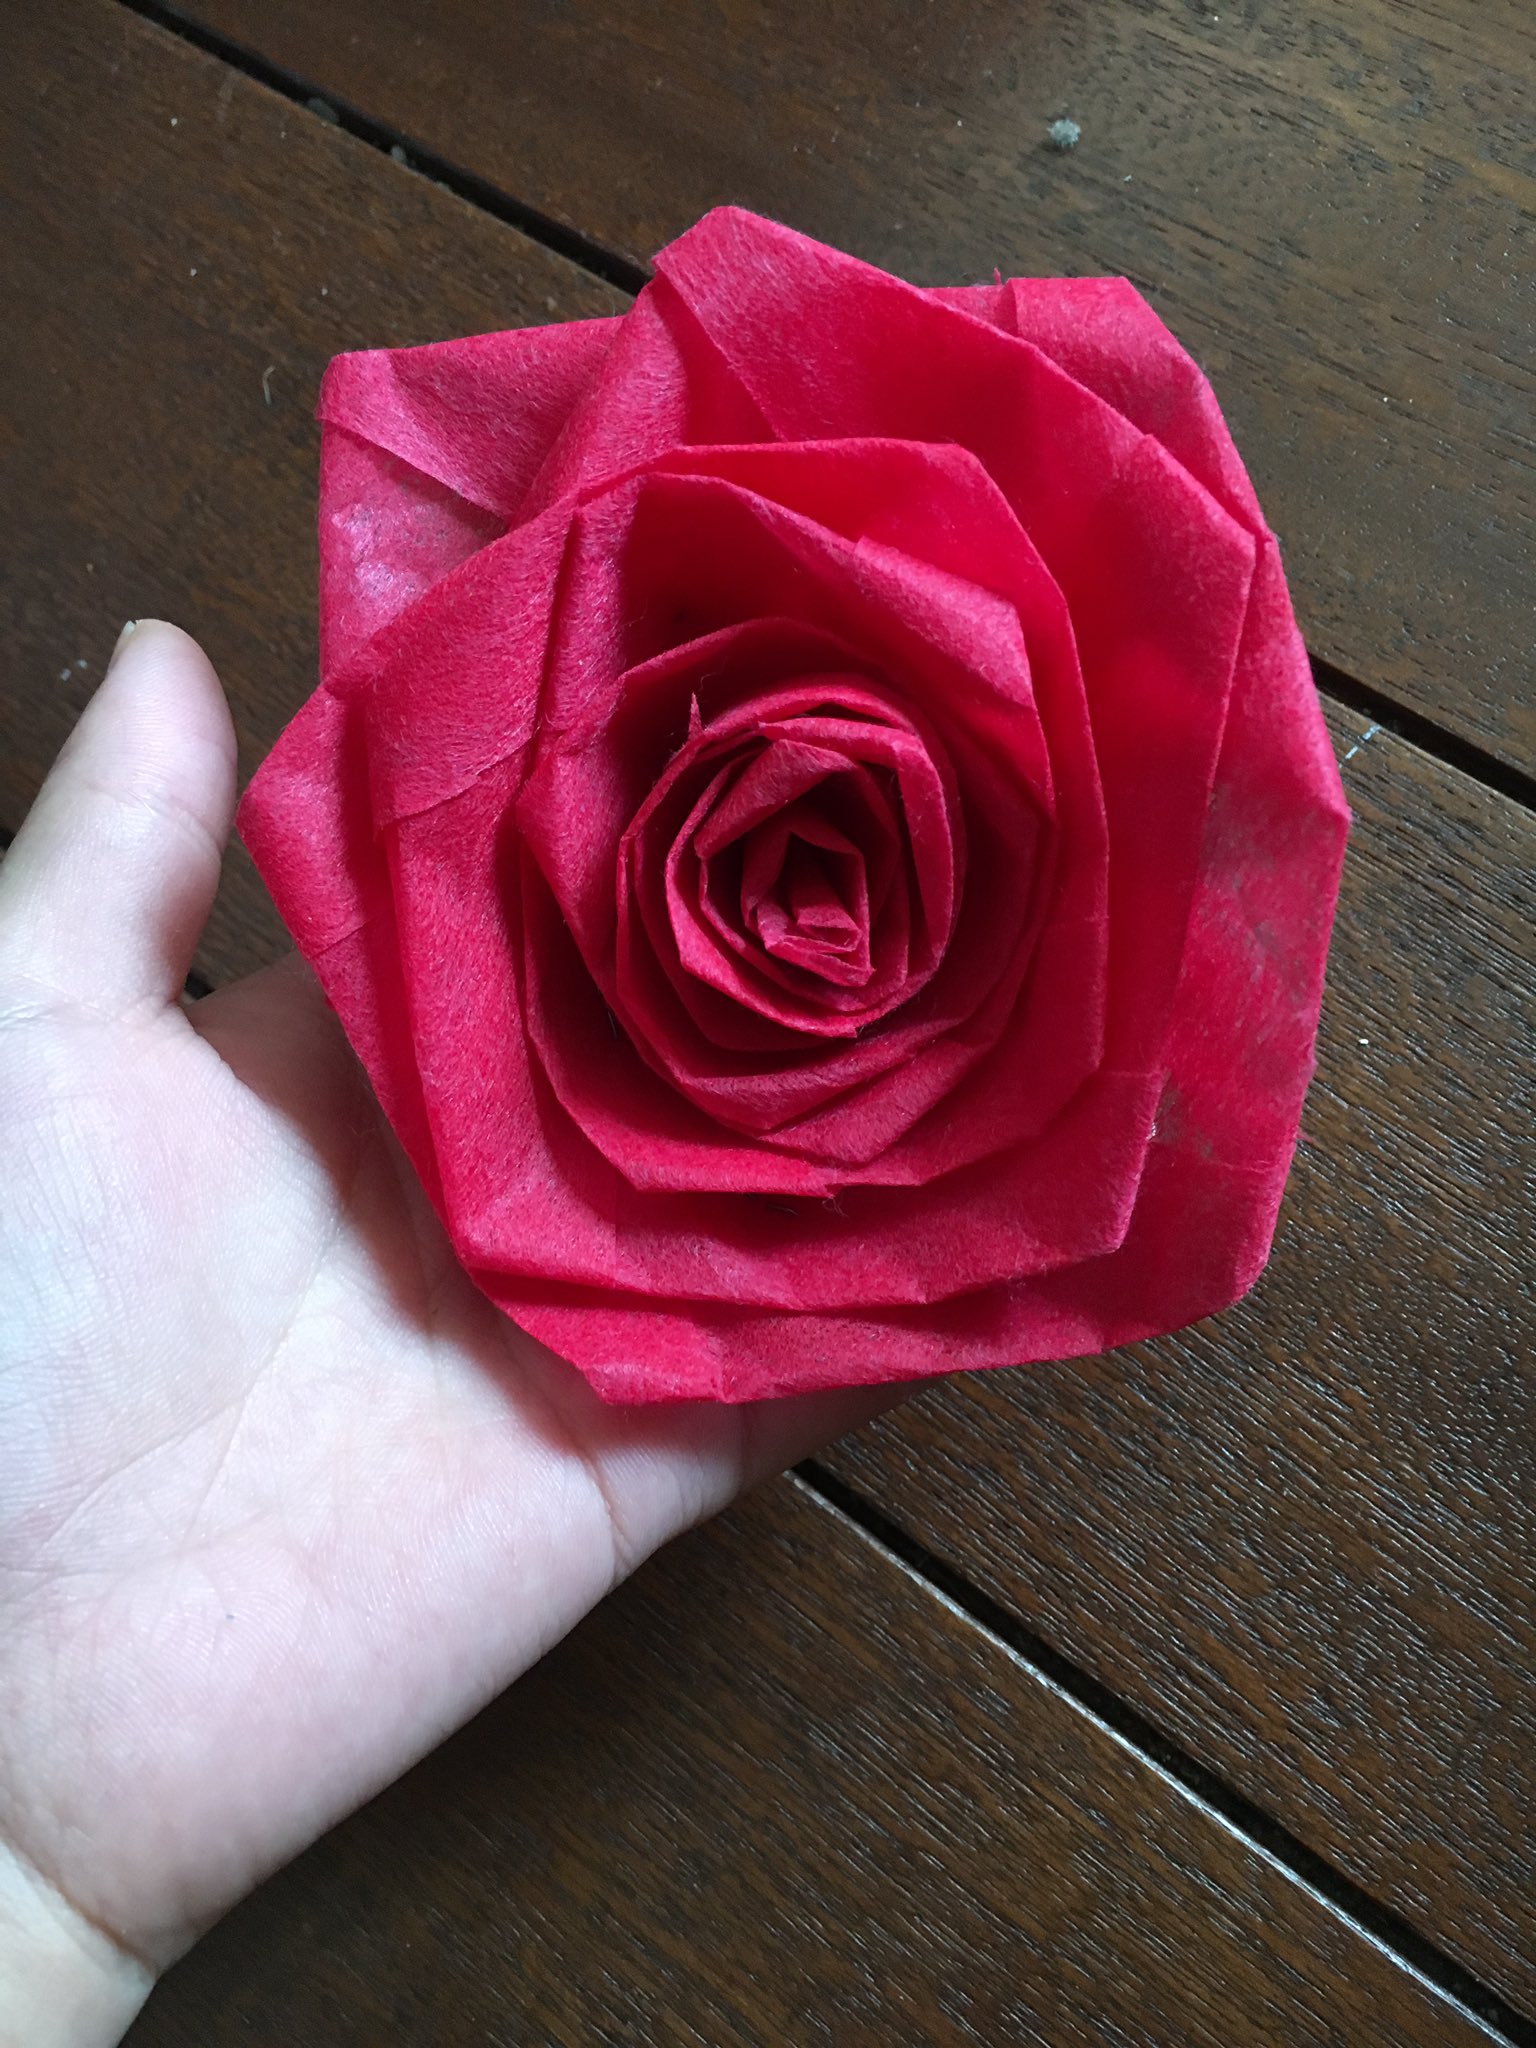 ダンデリオンlarp 状況が落ち着くまで 不織布アレンジ 薔薇の作り方 この薔薇も 不織布で作ったものです 長いリボン状にした不織布を折ってまとめていくだけで簡単に作れます その作り方を後述でご紹介していきましょう T Co Sseppare1c